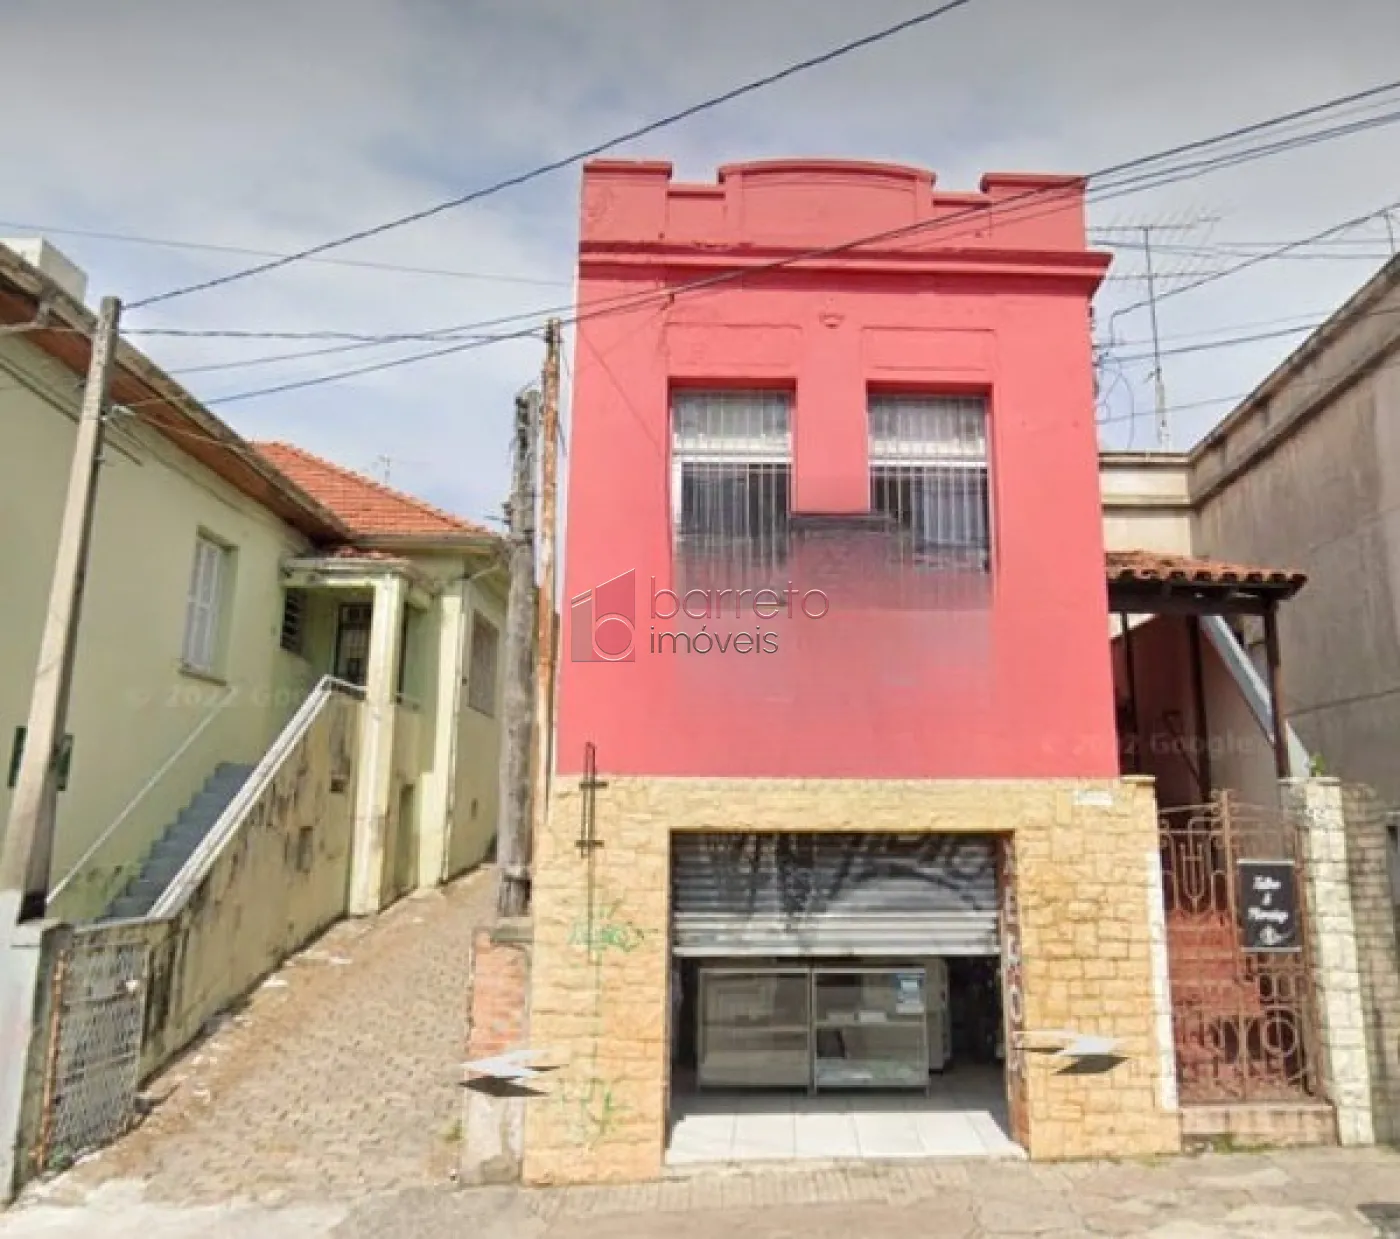 Comprar Casa / Padrão em Jundiaí R$ 500.000,00 - Foto 1